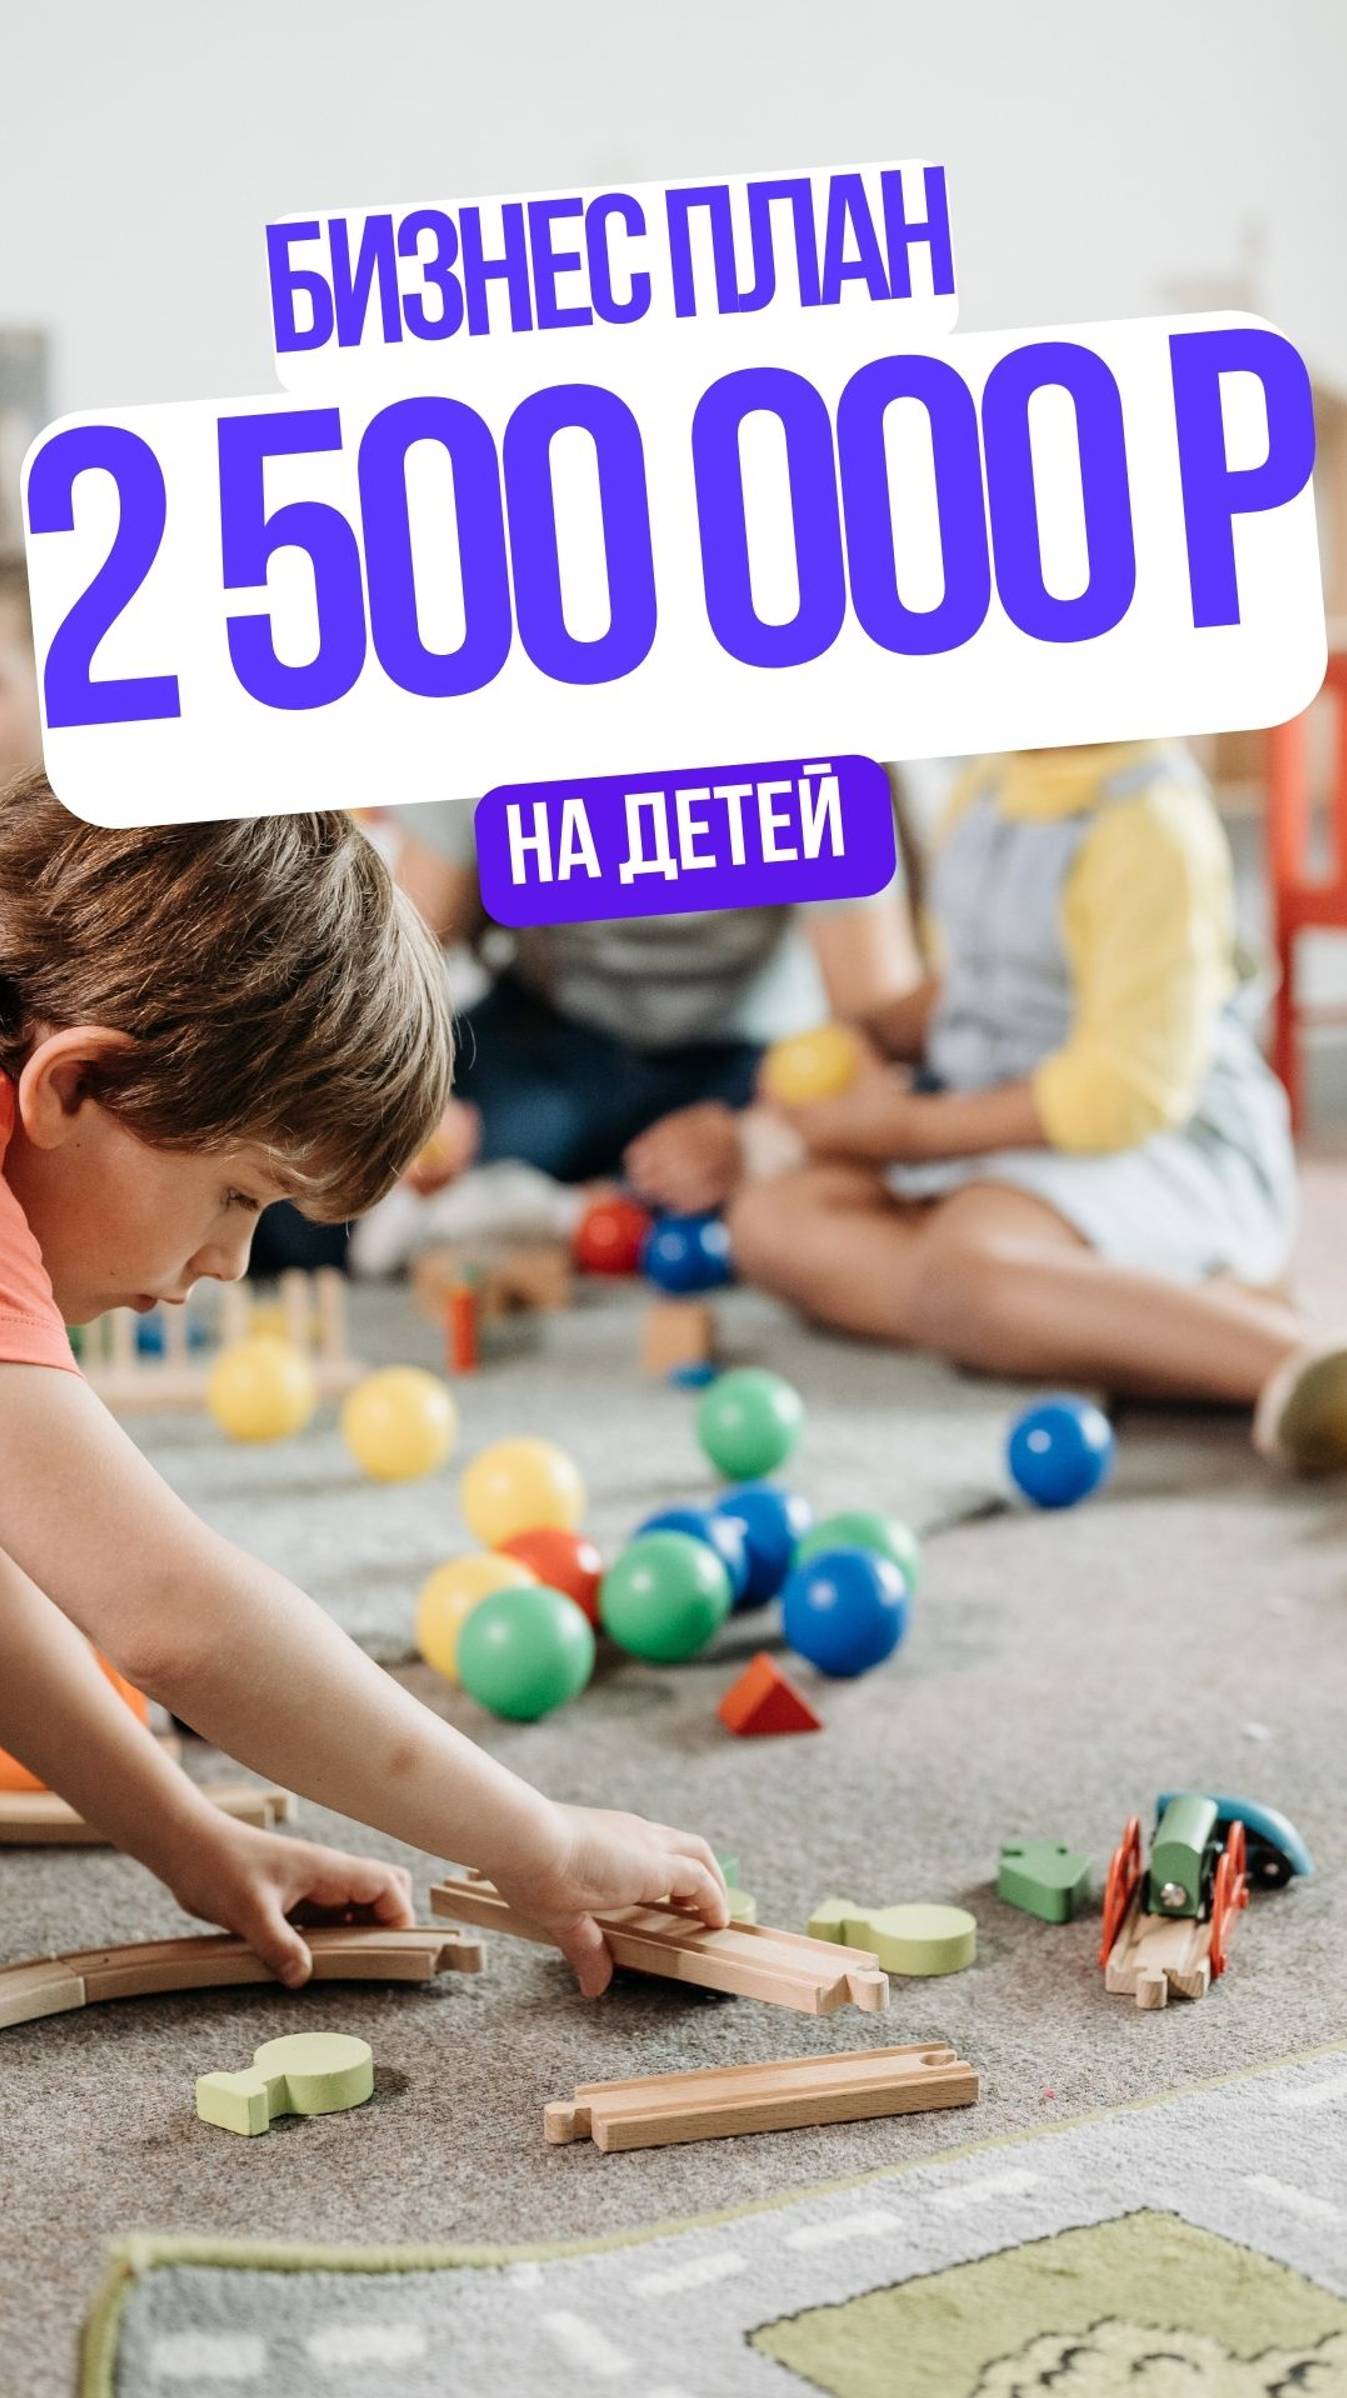 Как можно зарабатывать 2,5 млн рублей на детей.